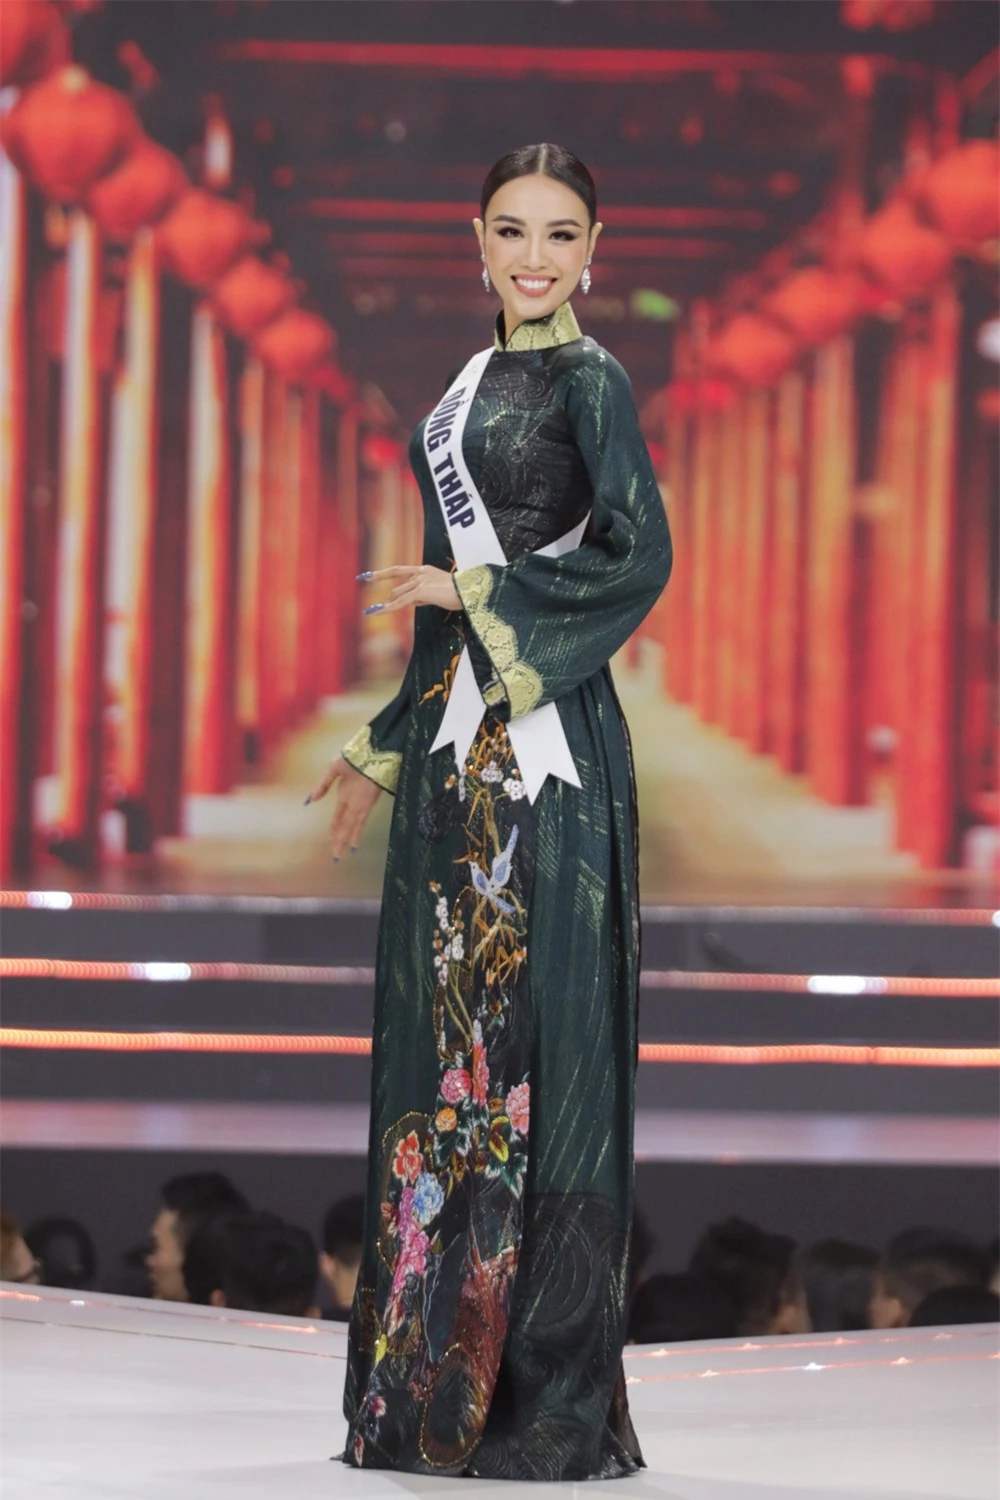 Bán kết Hoa hậu Hoàn vũ Việt Nam 2022: Loạt ứng viên cùng khoe vẻ nóng bỏng - Ảnh 11.